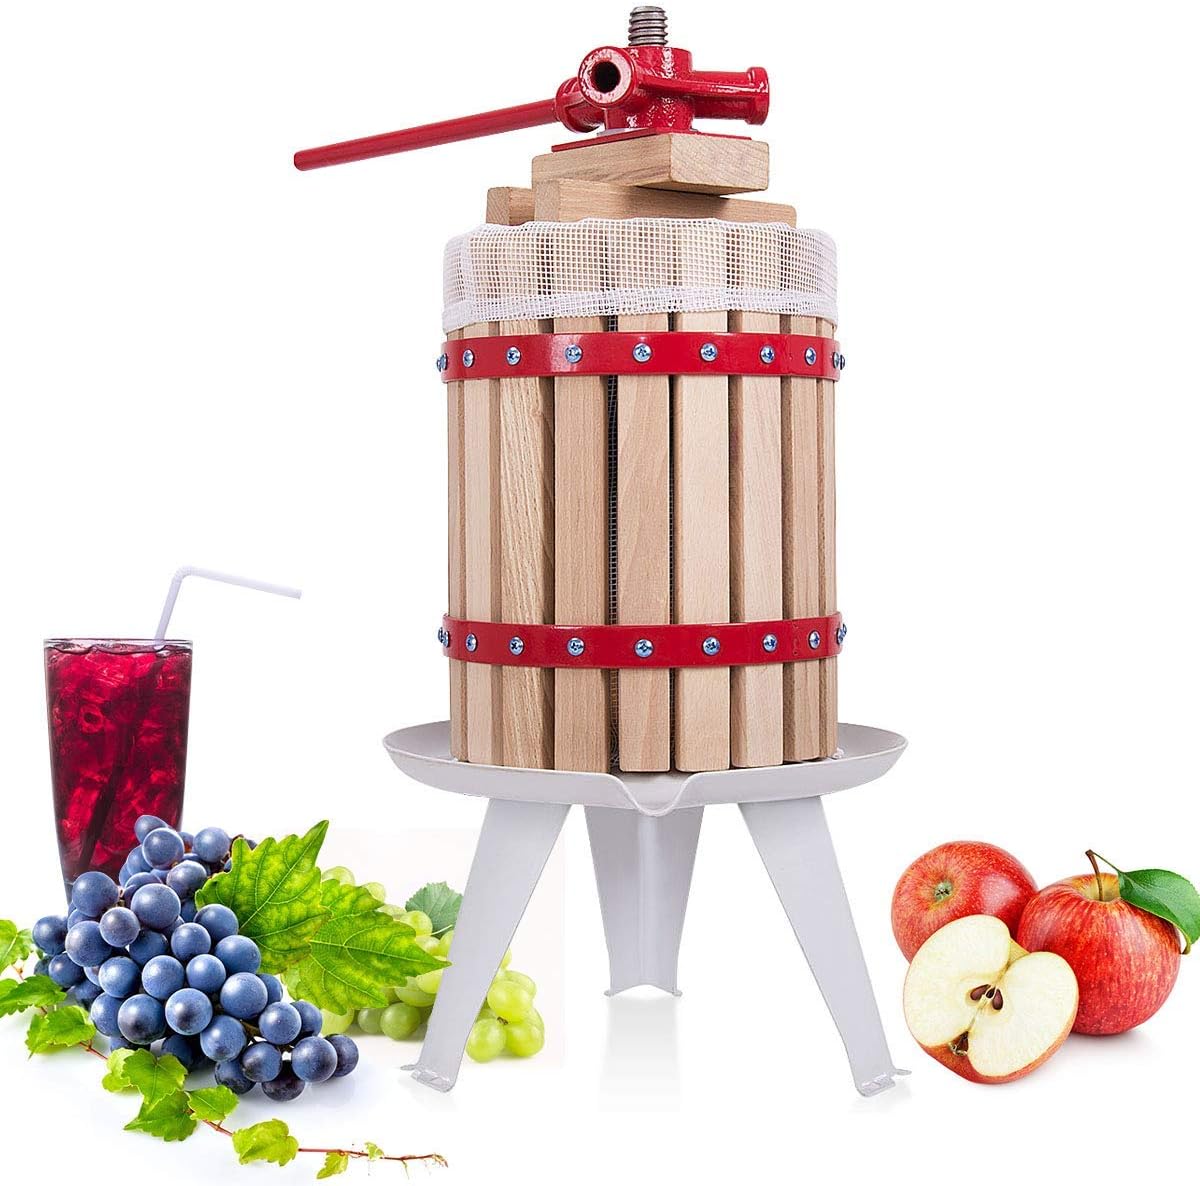 Wooden Manual Apple Fruit Press for Homemade Juice Wine & Cider Making 6 Litre